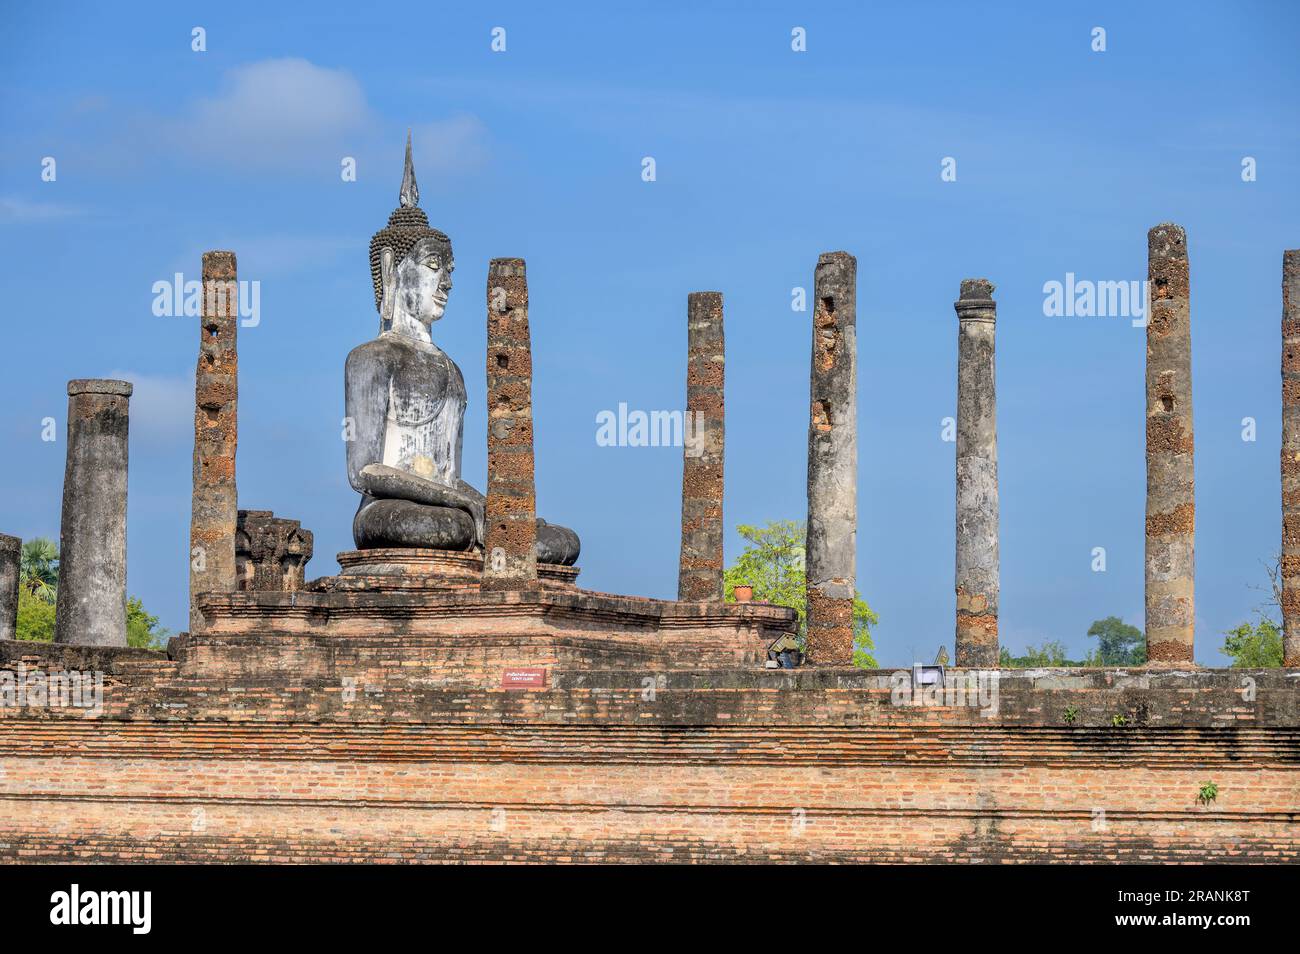 Wat Mahathat est un complexe de temples bouddhistes (wat) dans le parc historique de Sukhothai, province de Sukhothai dans la région nord de la Thaïlande Banque D'Images